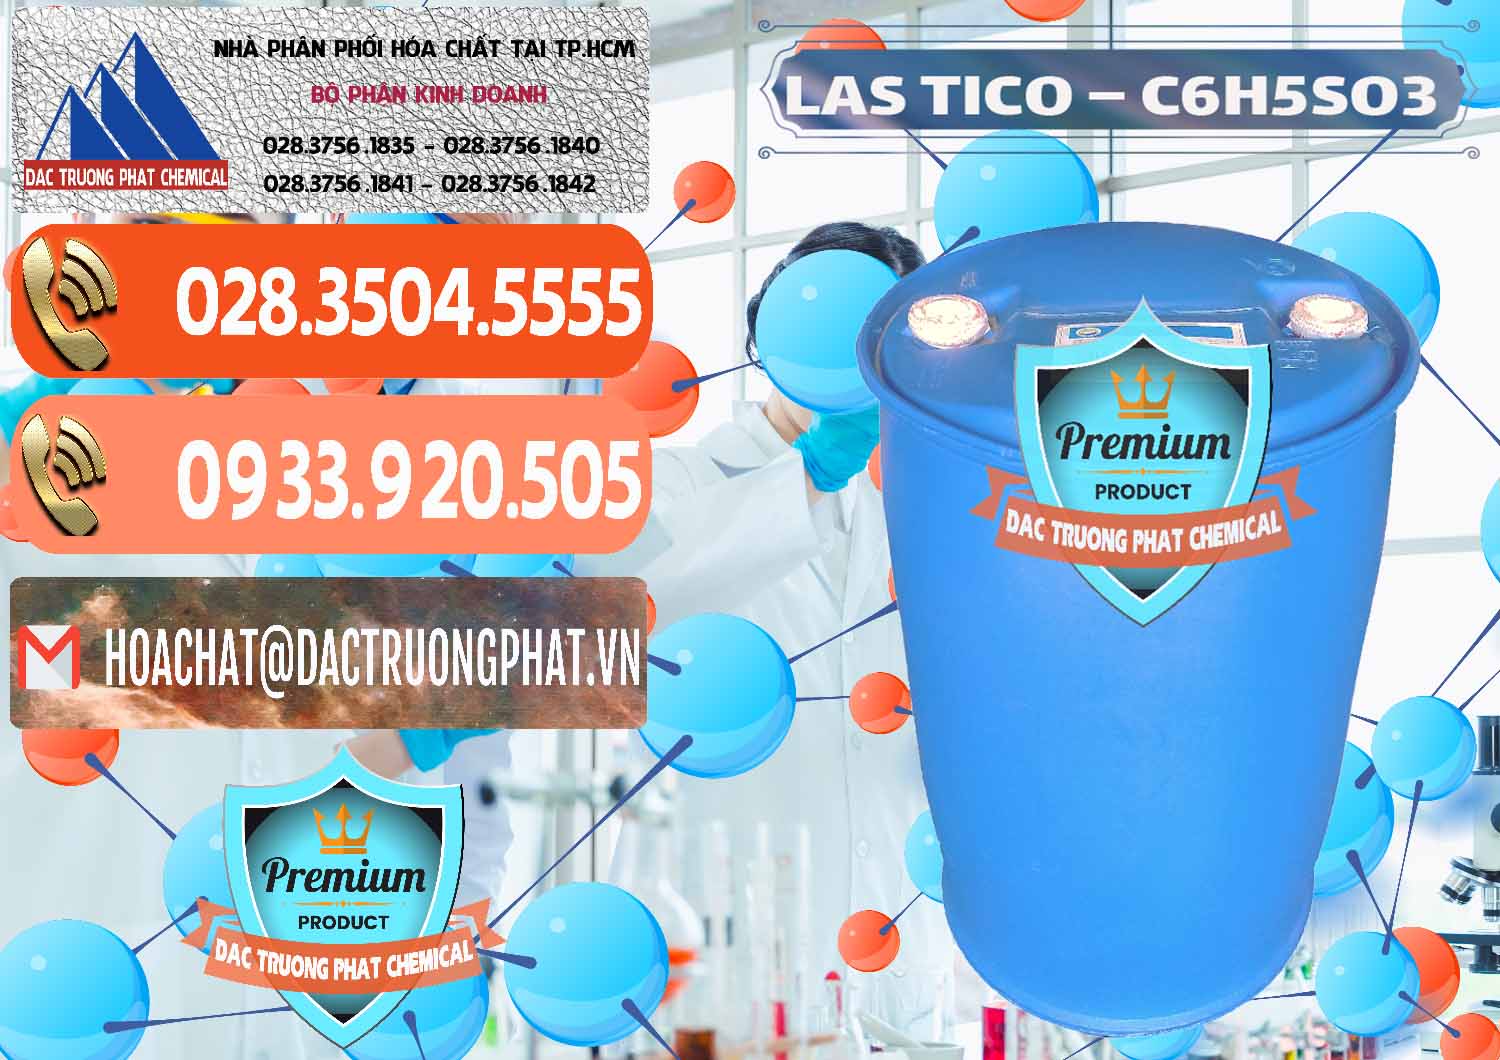 Đơn vị chuyên kinh doanh - cung cấp Chất tạo bọt Las H Tico Việt Nam - 0190 - Cty chuyên bán - phân phối hóa chất tại TP.HCM - hoachatmientay.com